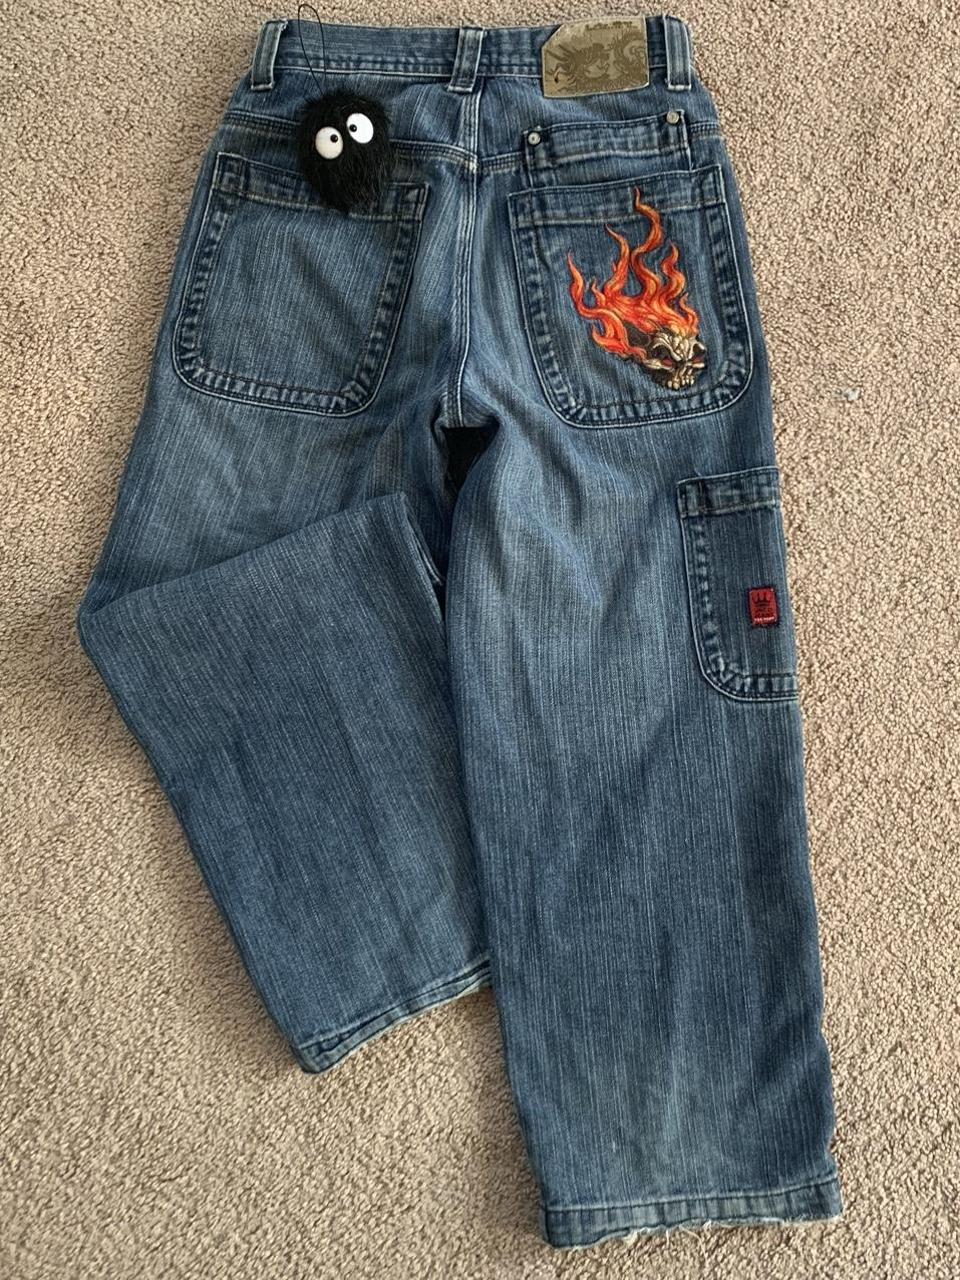 VINTAGE Flaming Skull Jnco Jeans Size 10 Greta... - Depop